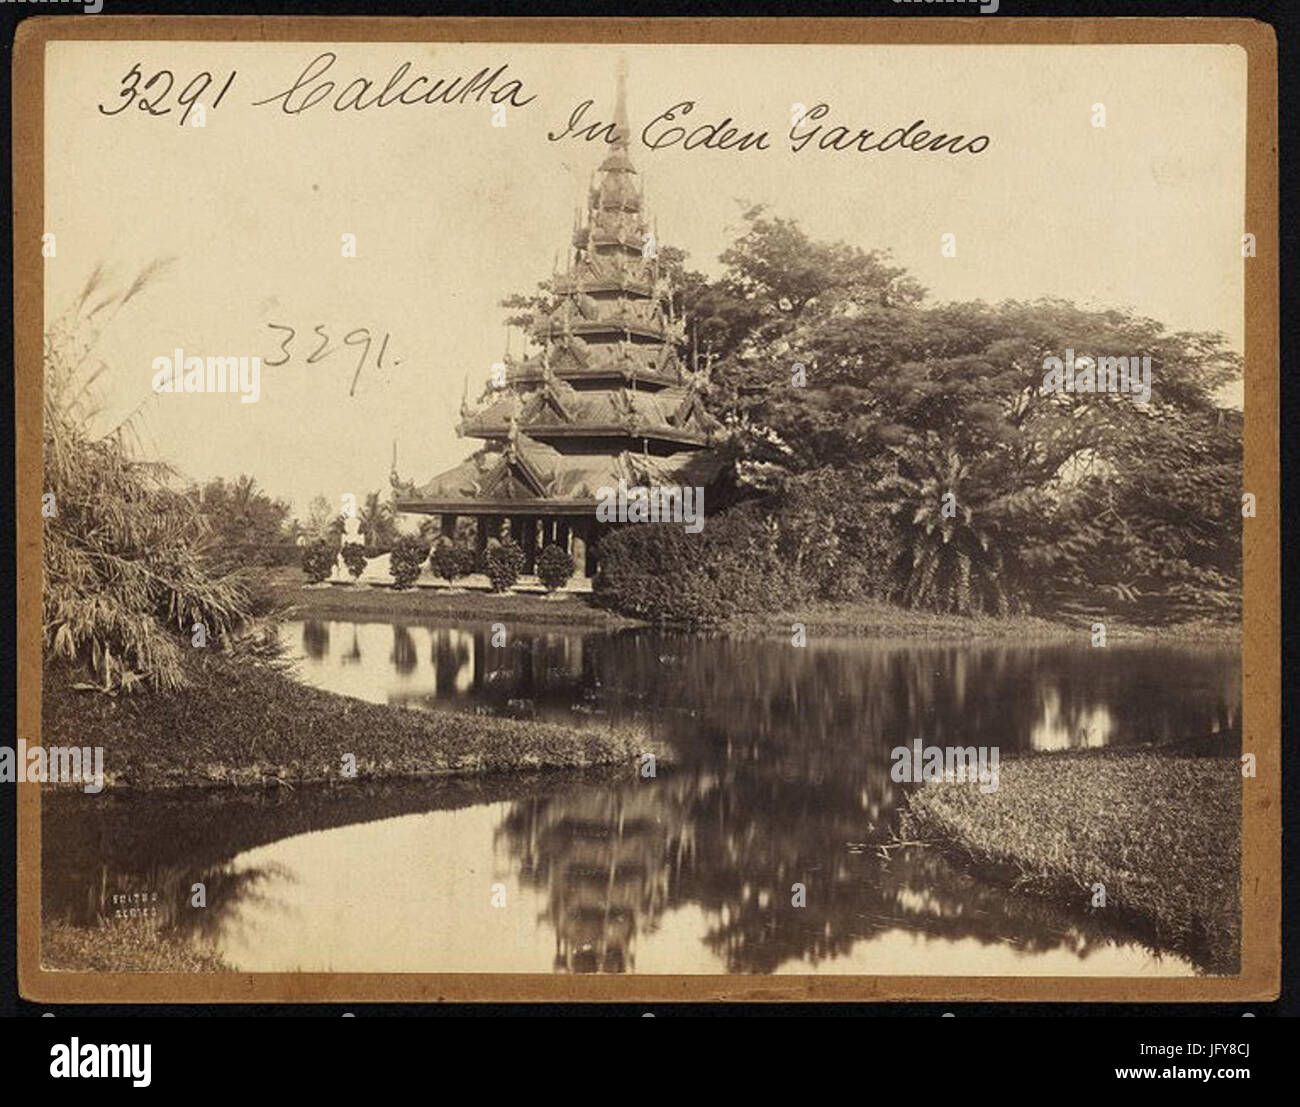 Eden Gardens Pagoda Calcutta by Francis Frith Stock Photo